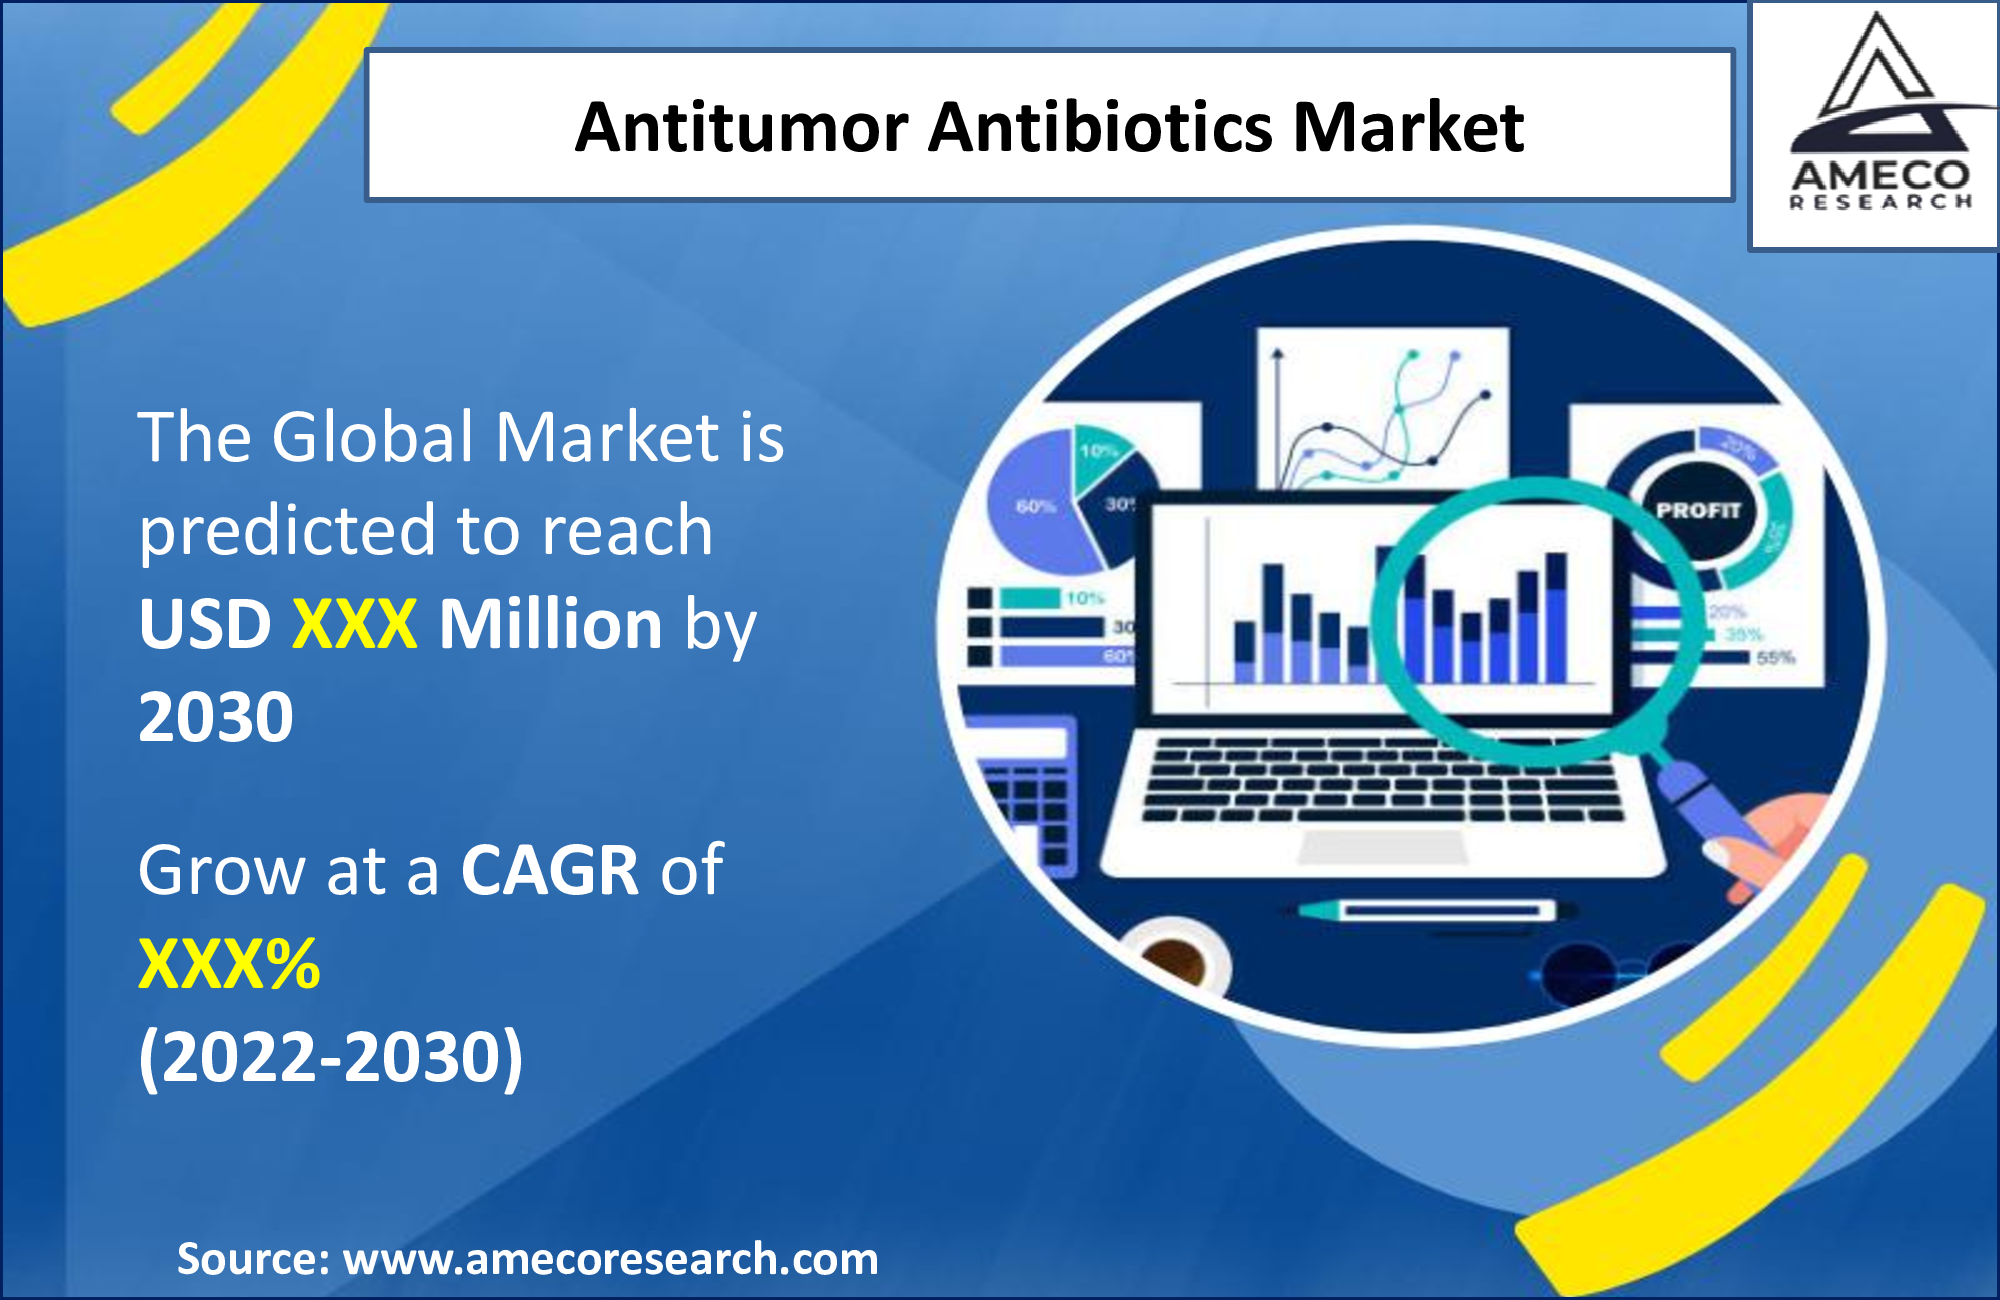 Antitumor Antibiotics Market